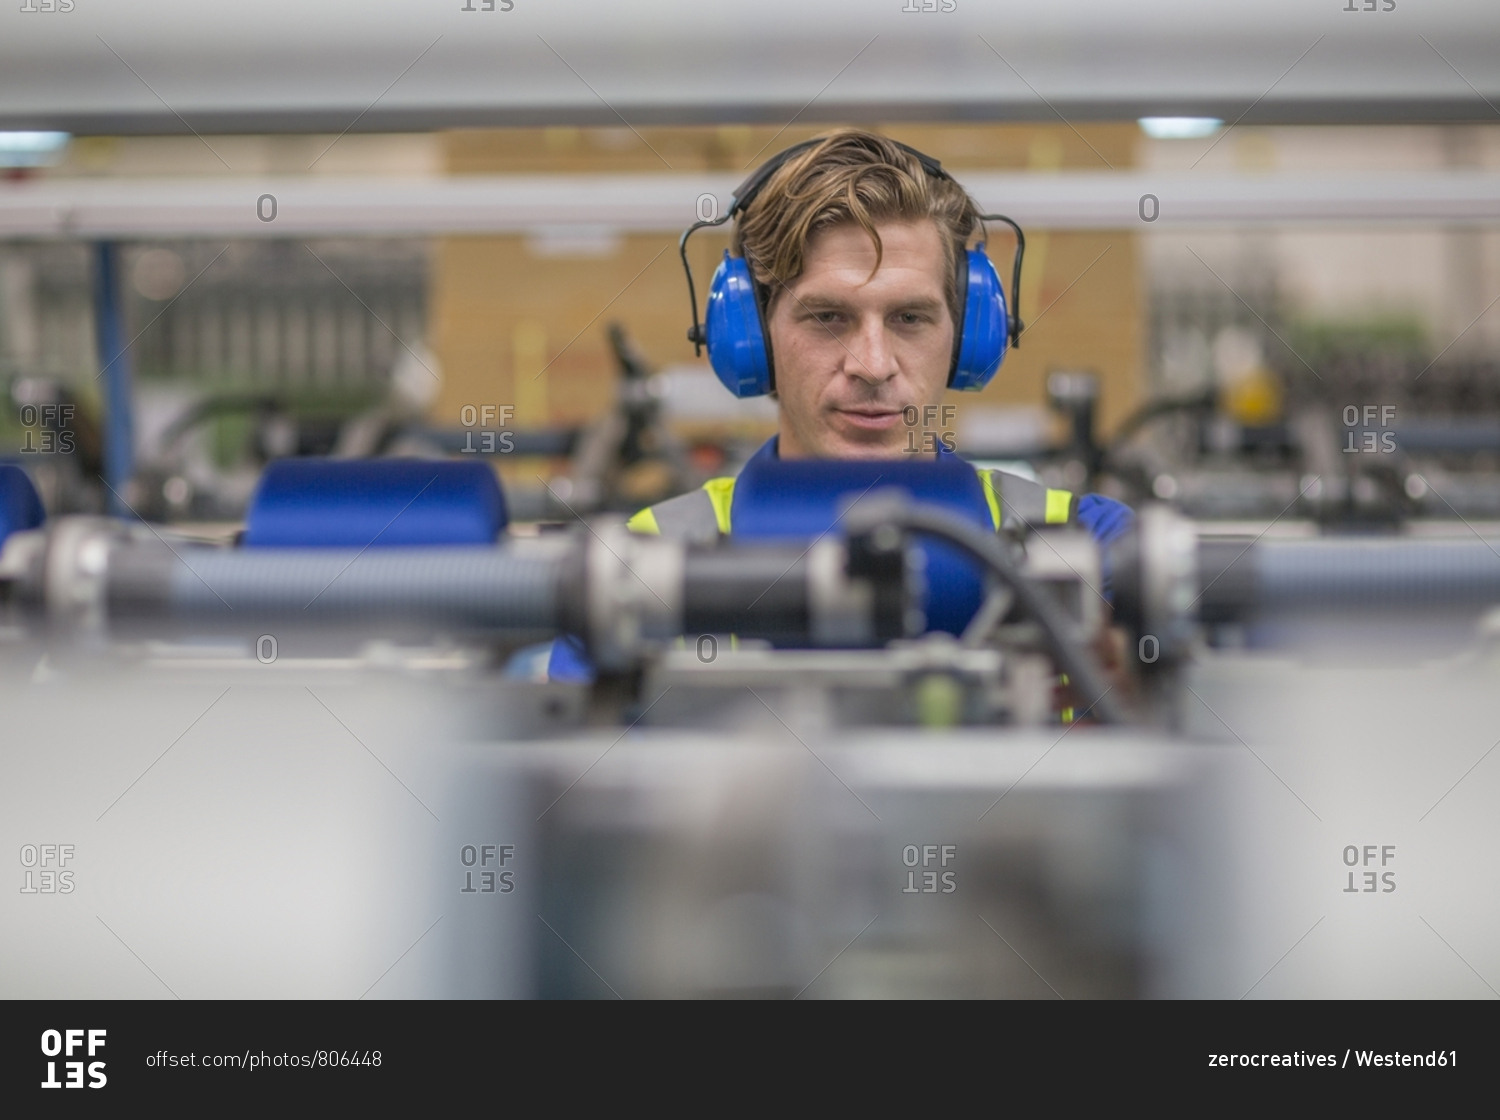 Man wearing ear defenders operating machine in factory